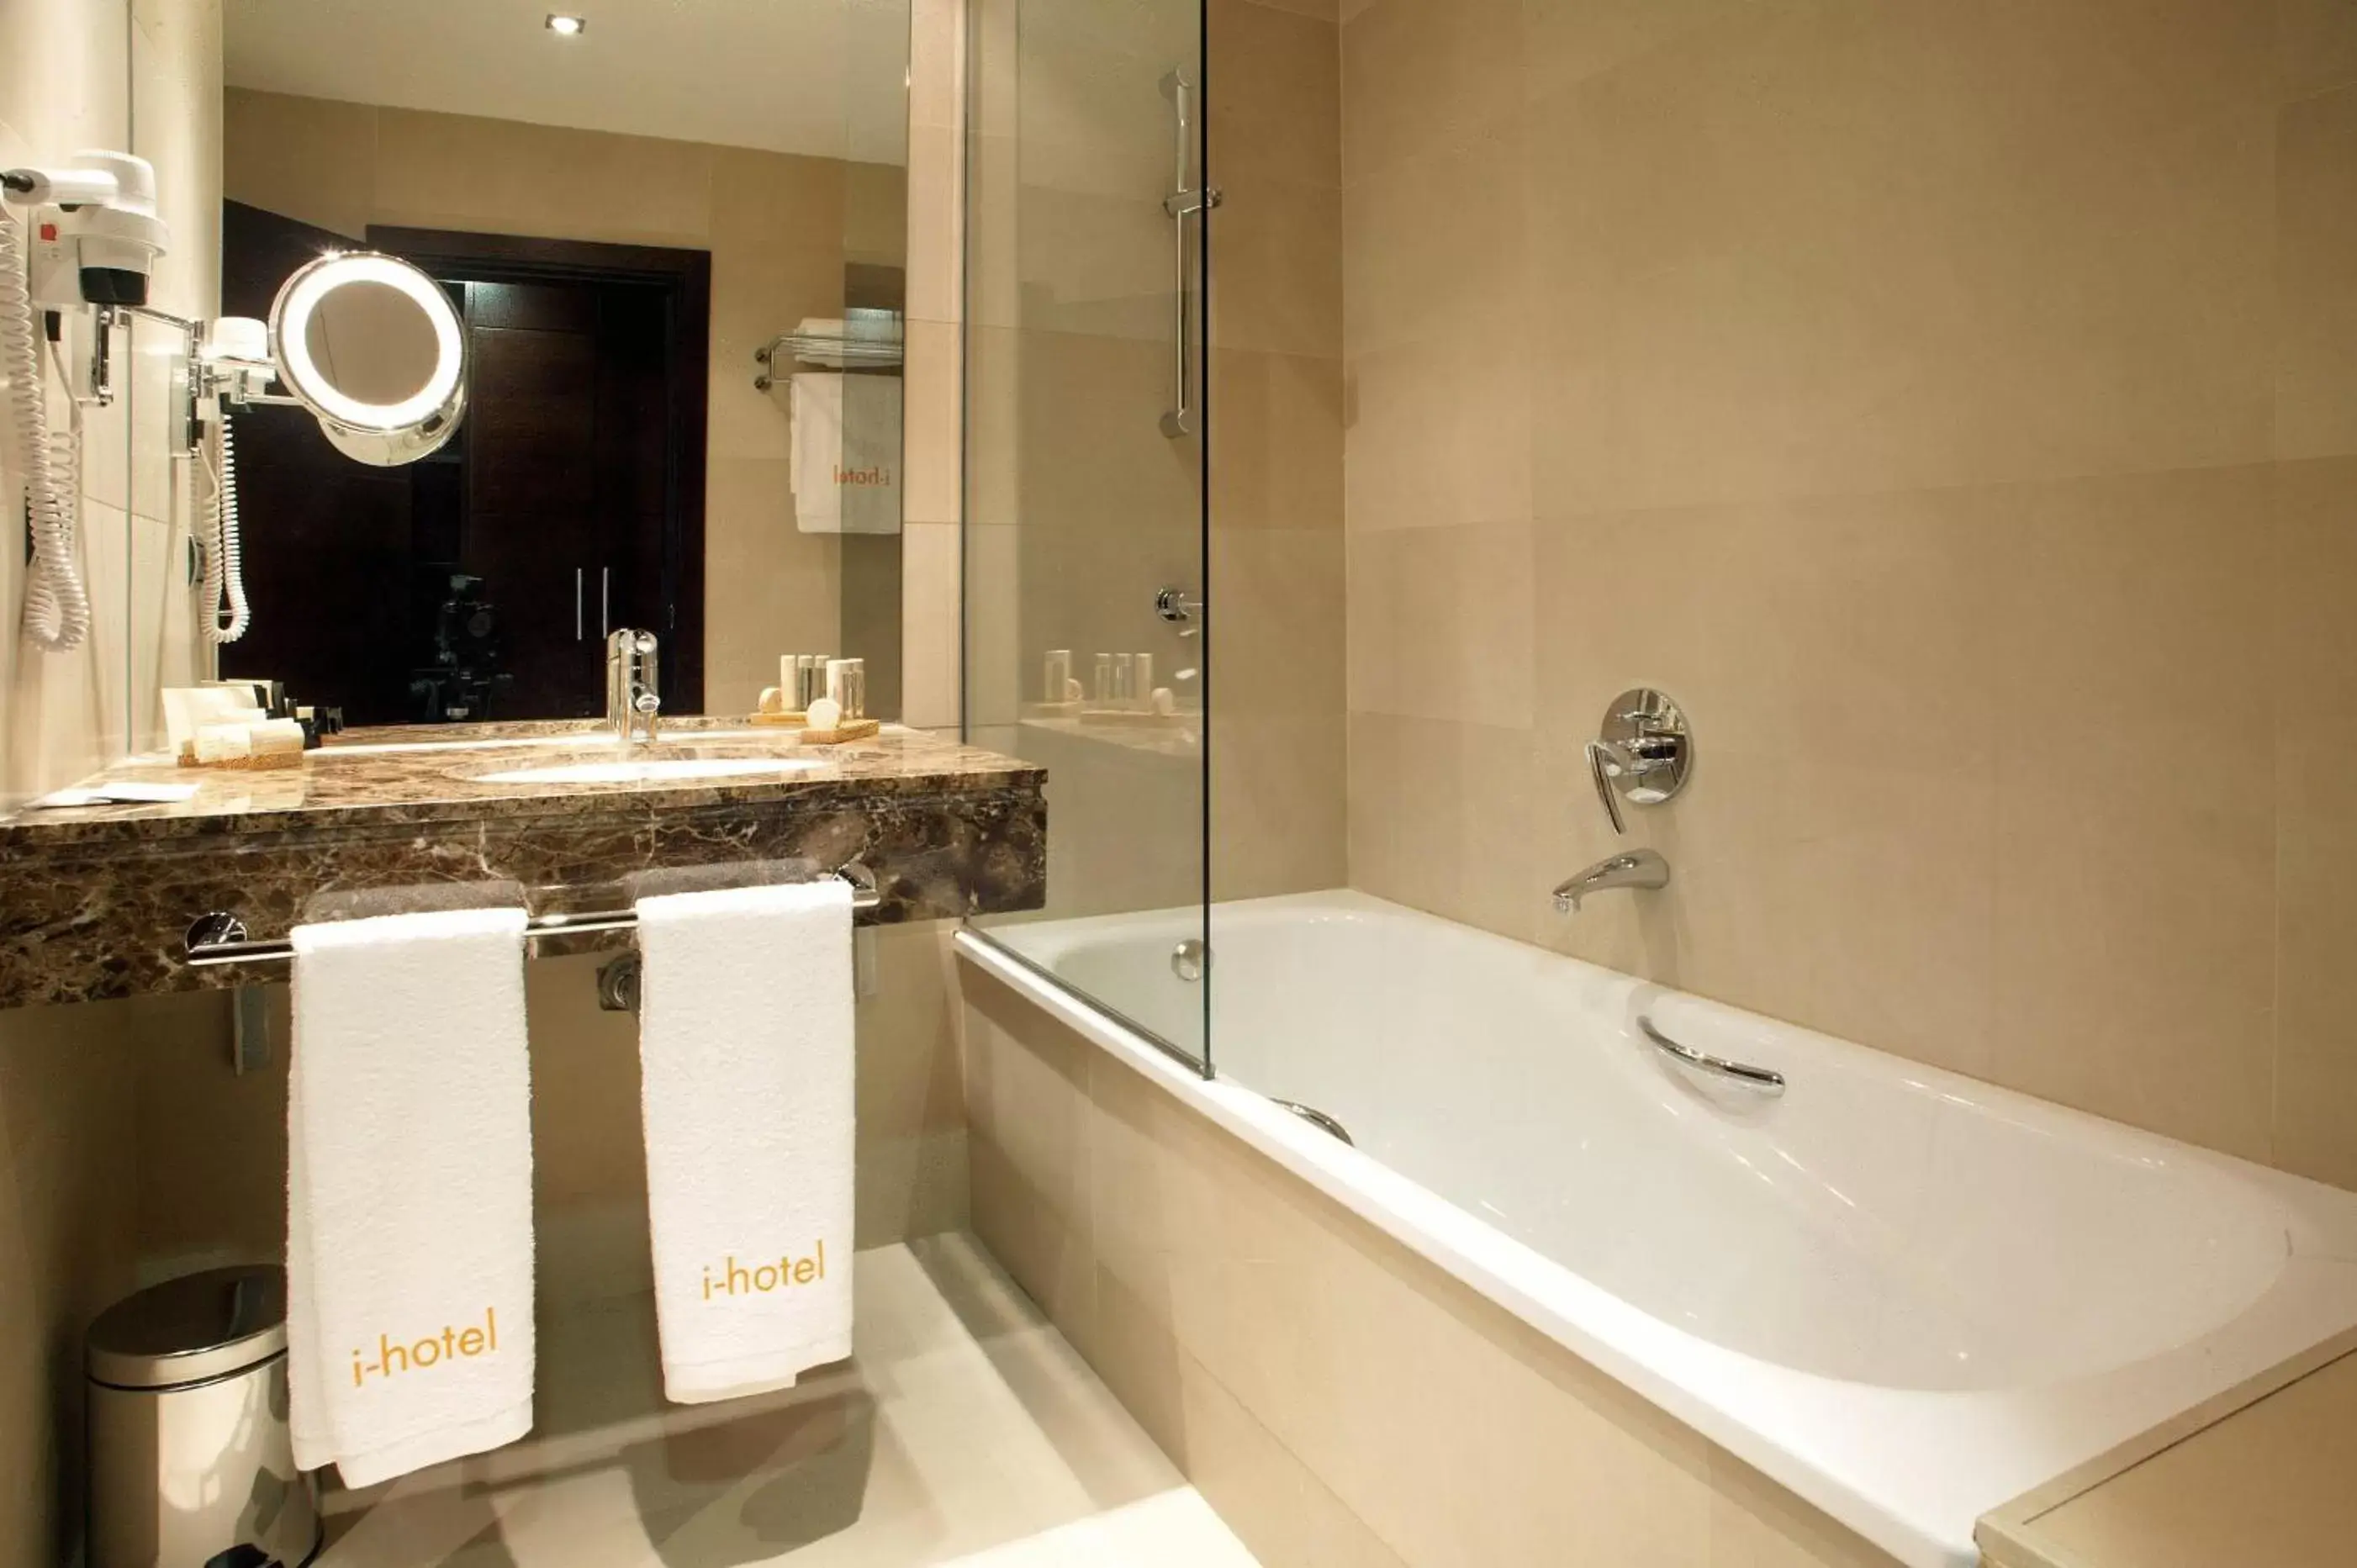 Shower, Bathroom in Eurostars i-hotel Madrid